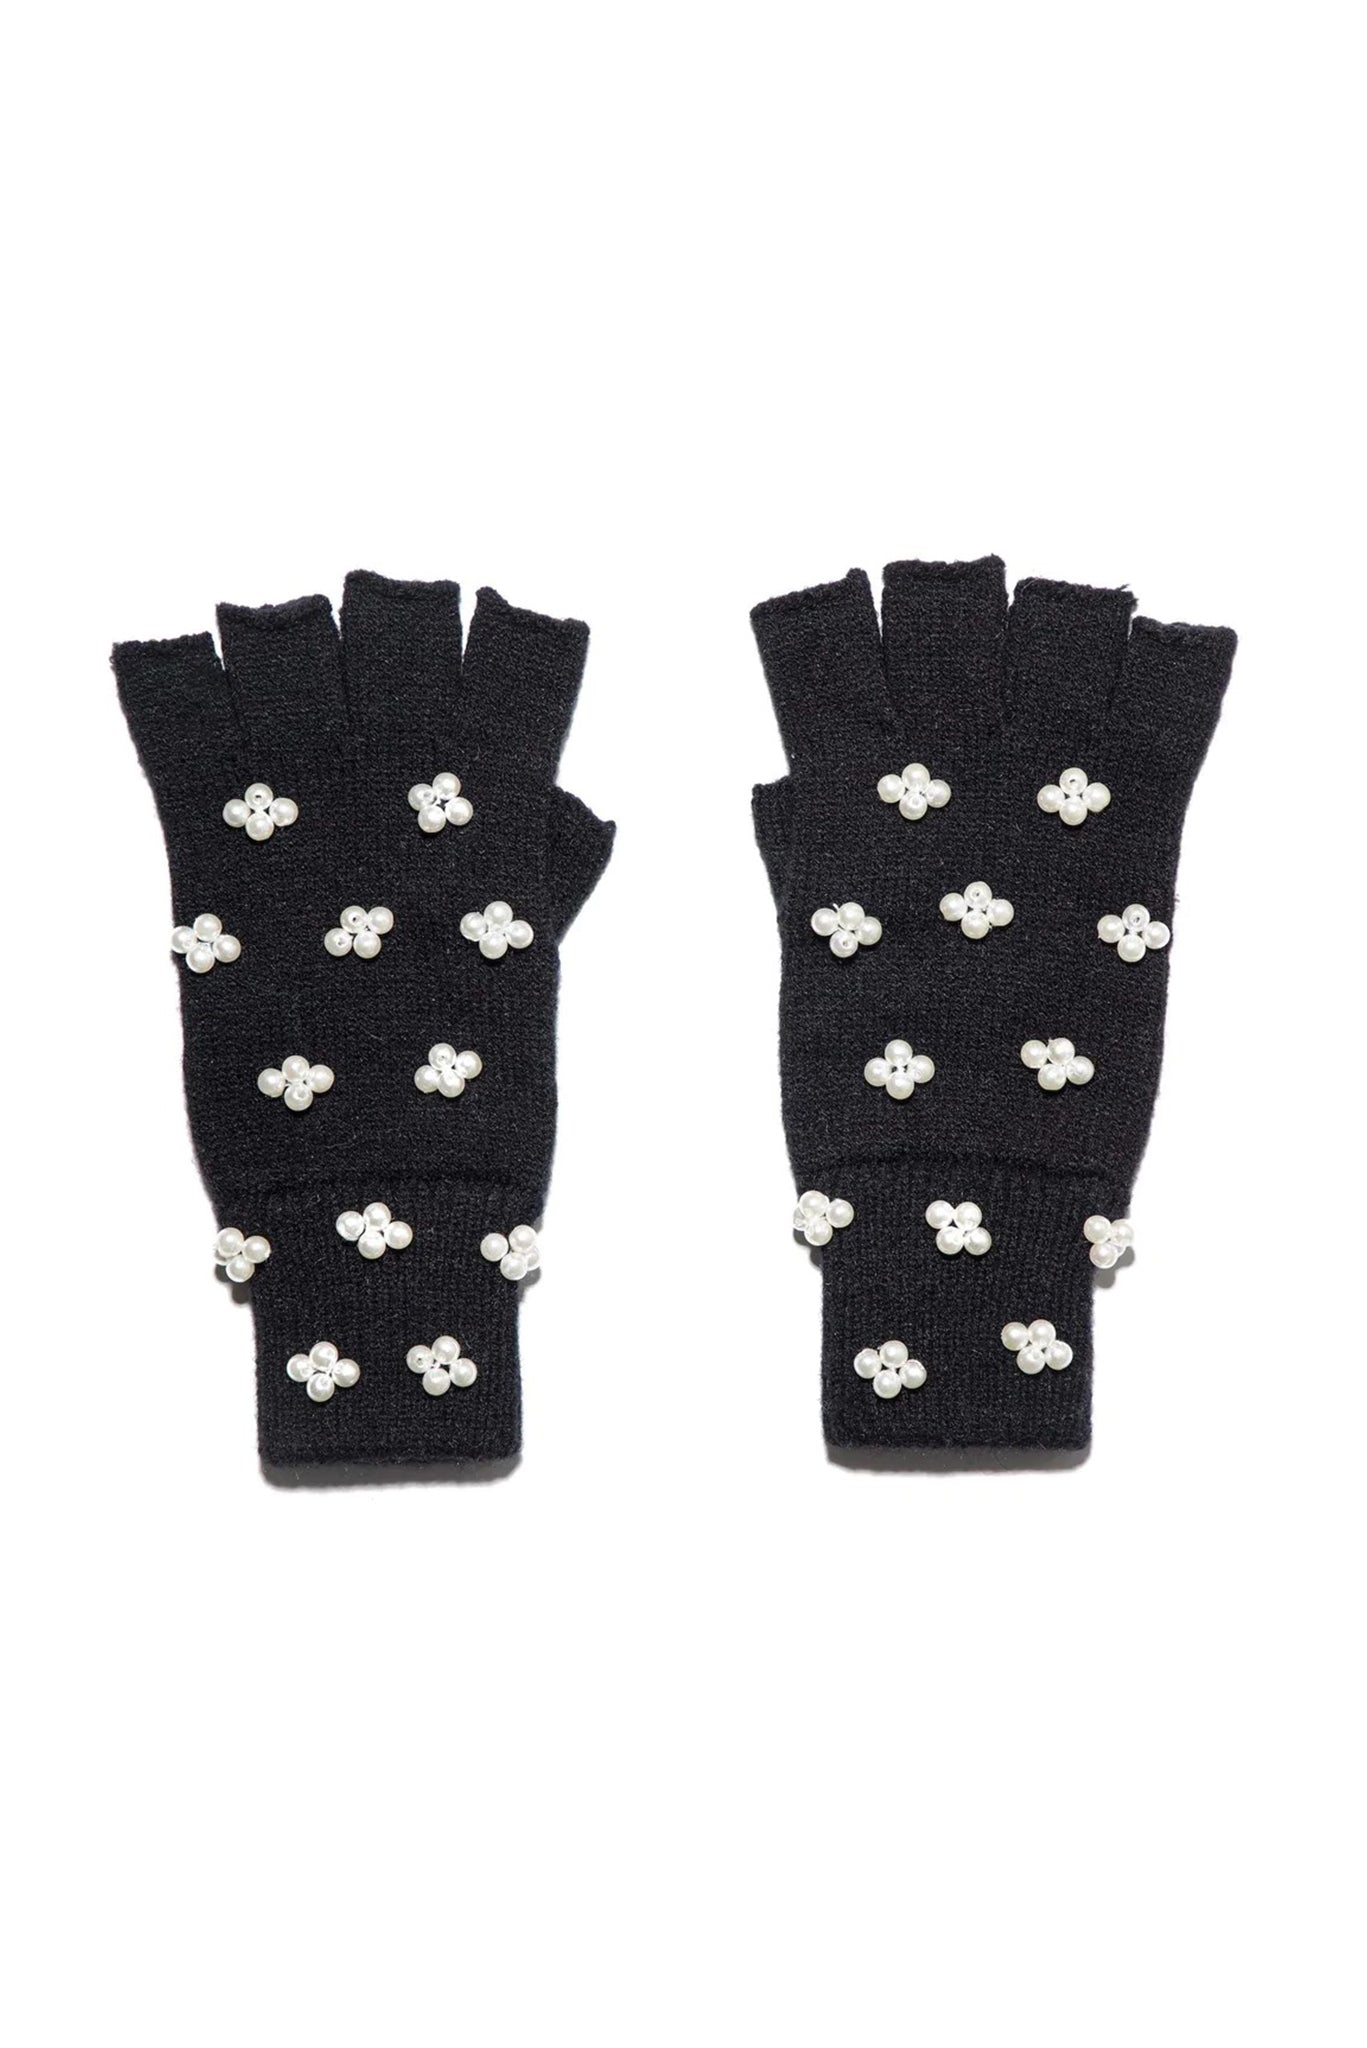 Jet Pearl Cluster Fingerless Knit Gloves